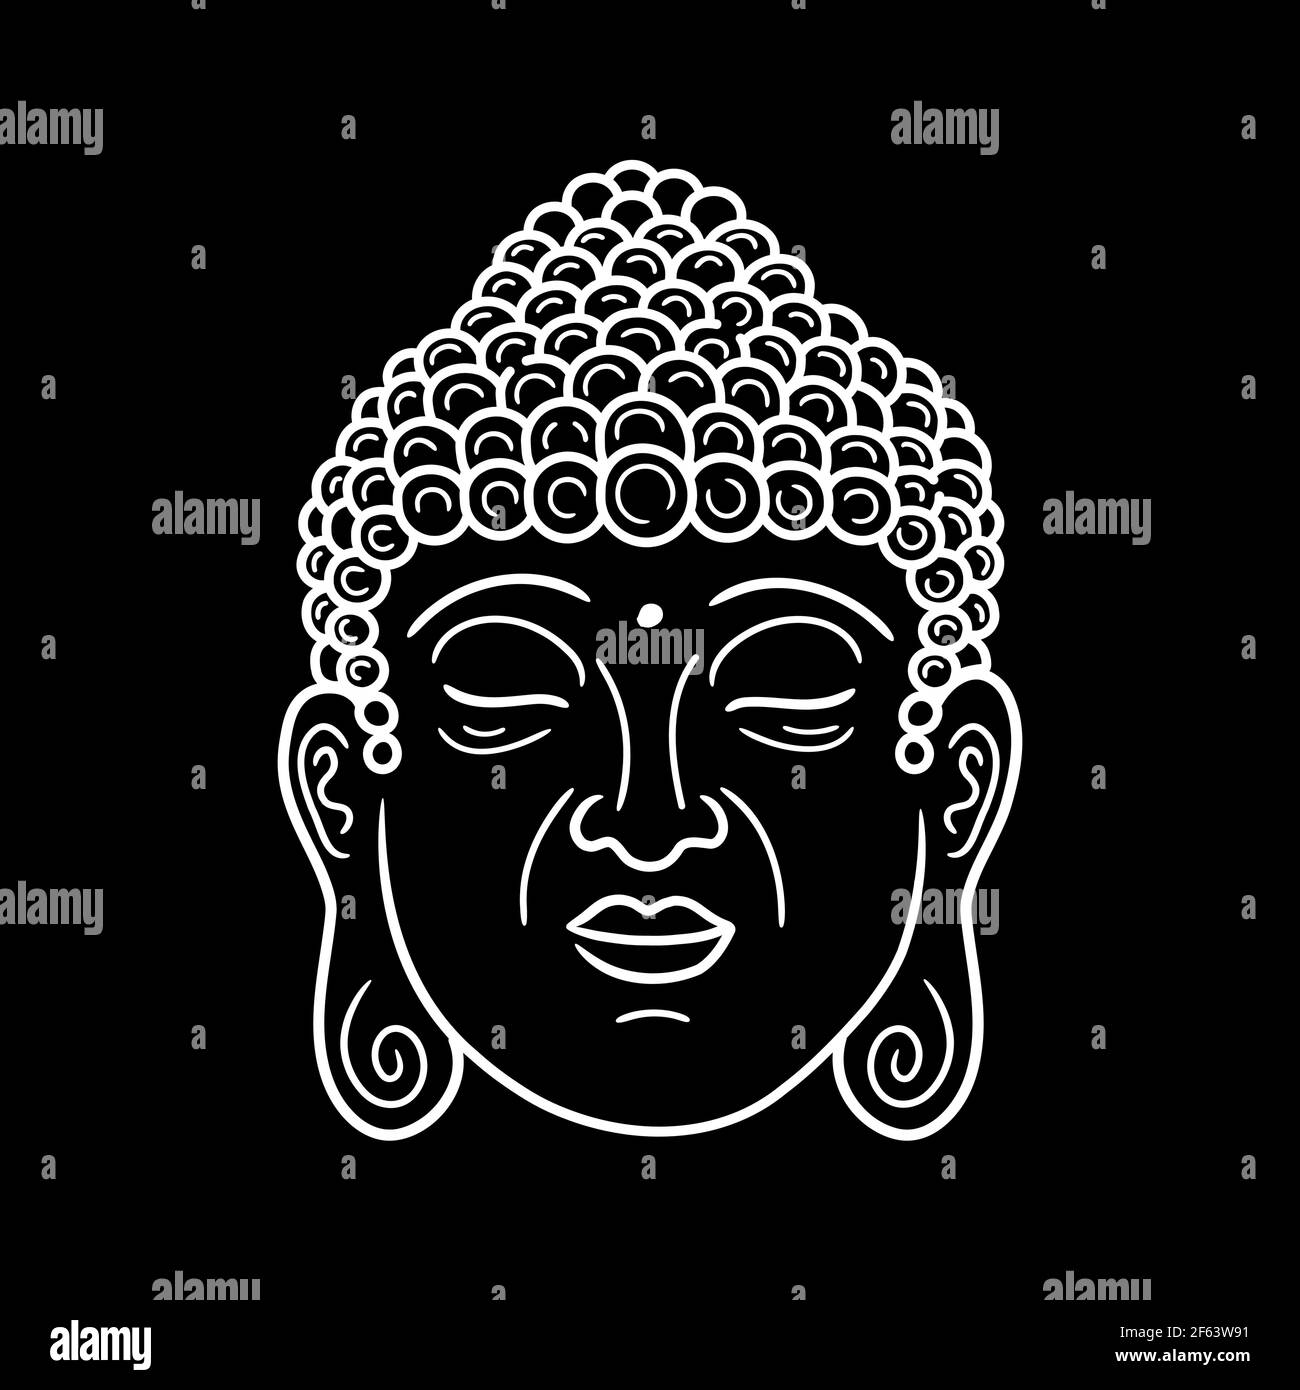 Portrait de Bouddha sur fond noir. Icône d'illustration de caractère de style vectoriel dessiné à la main. Motif visage de Bouddha avec ligne de caractères pour poster, carte, t-shirt Illustration de Vecteur